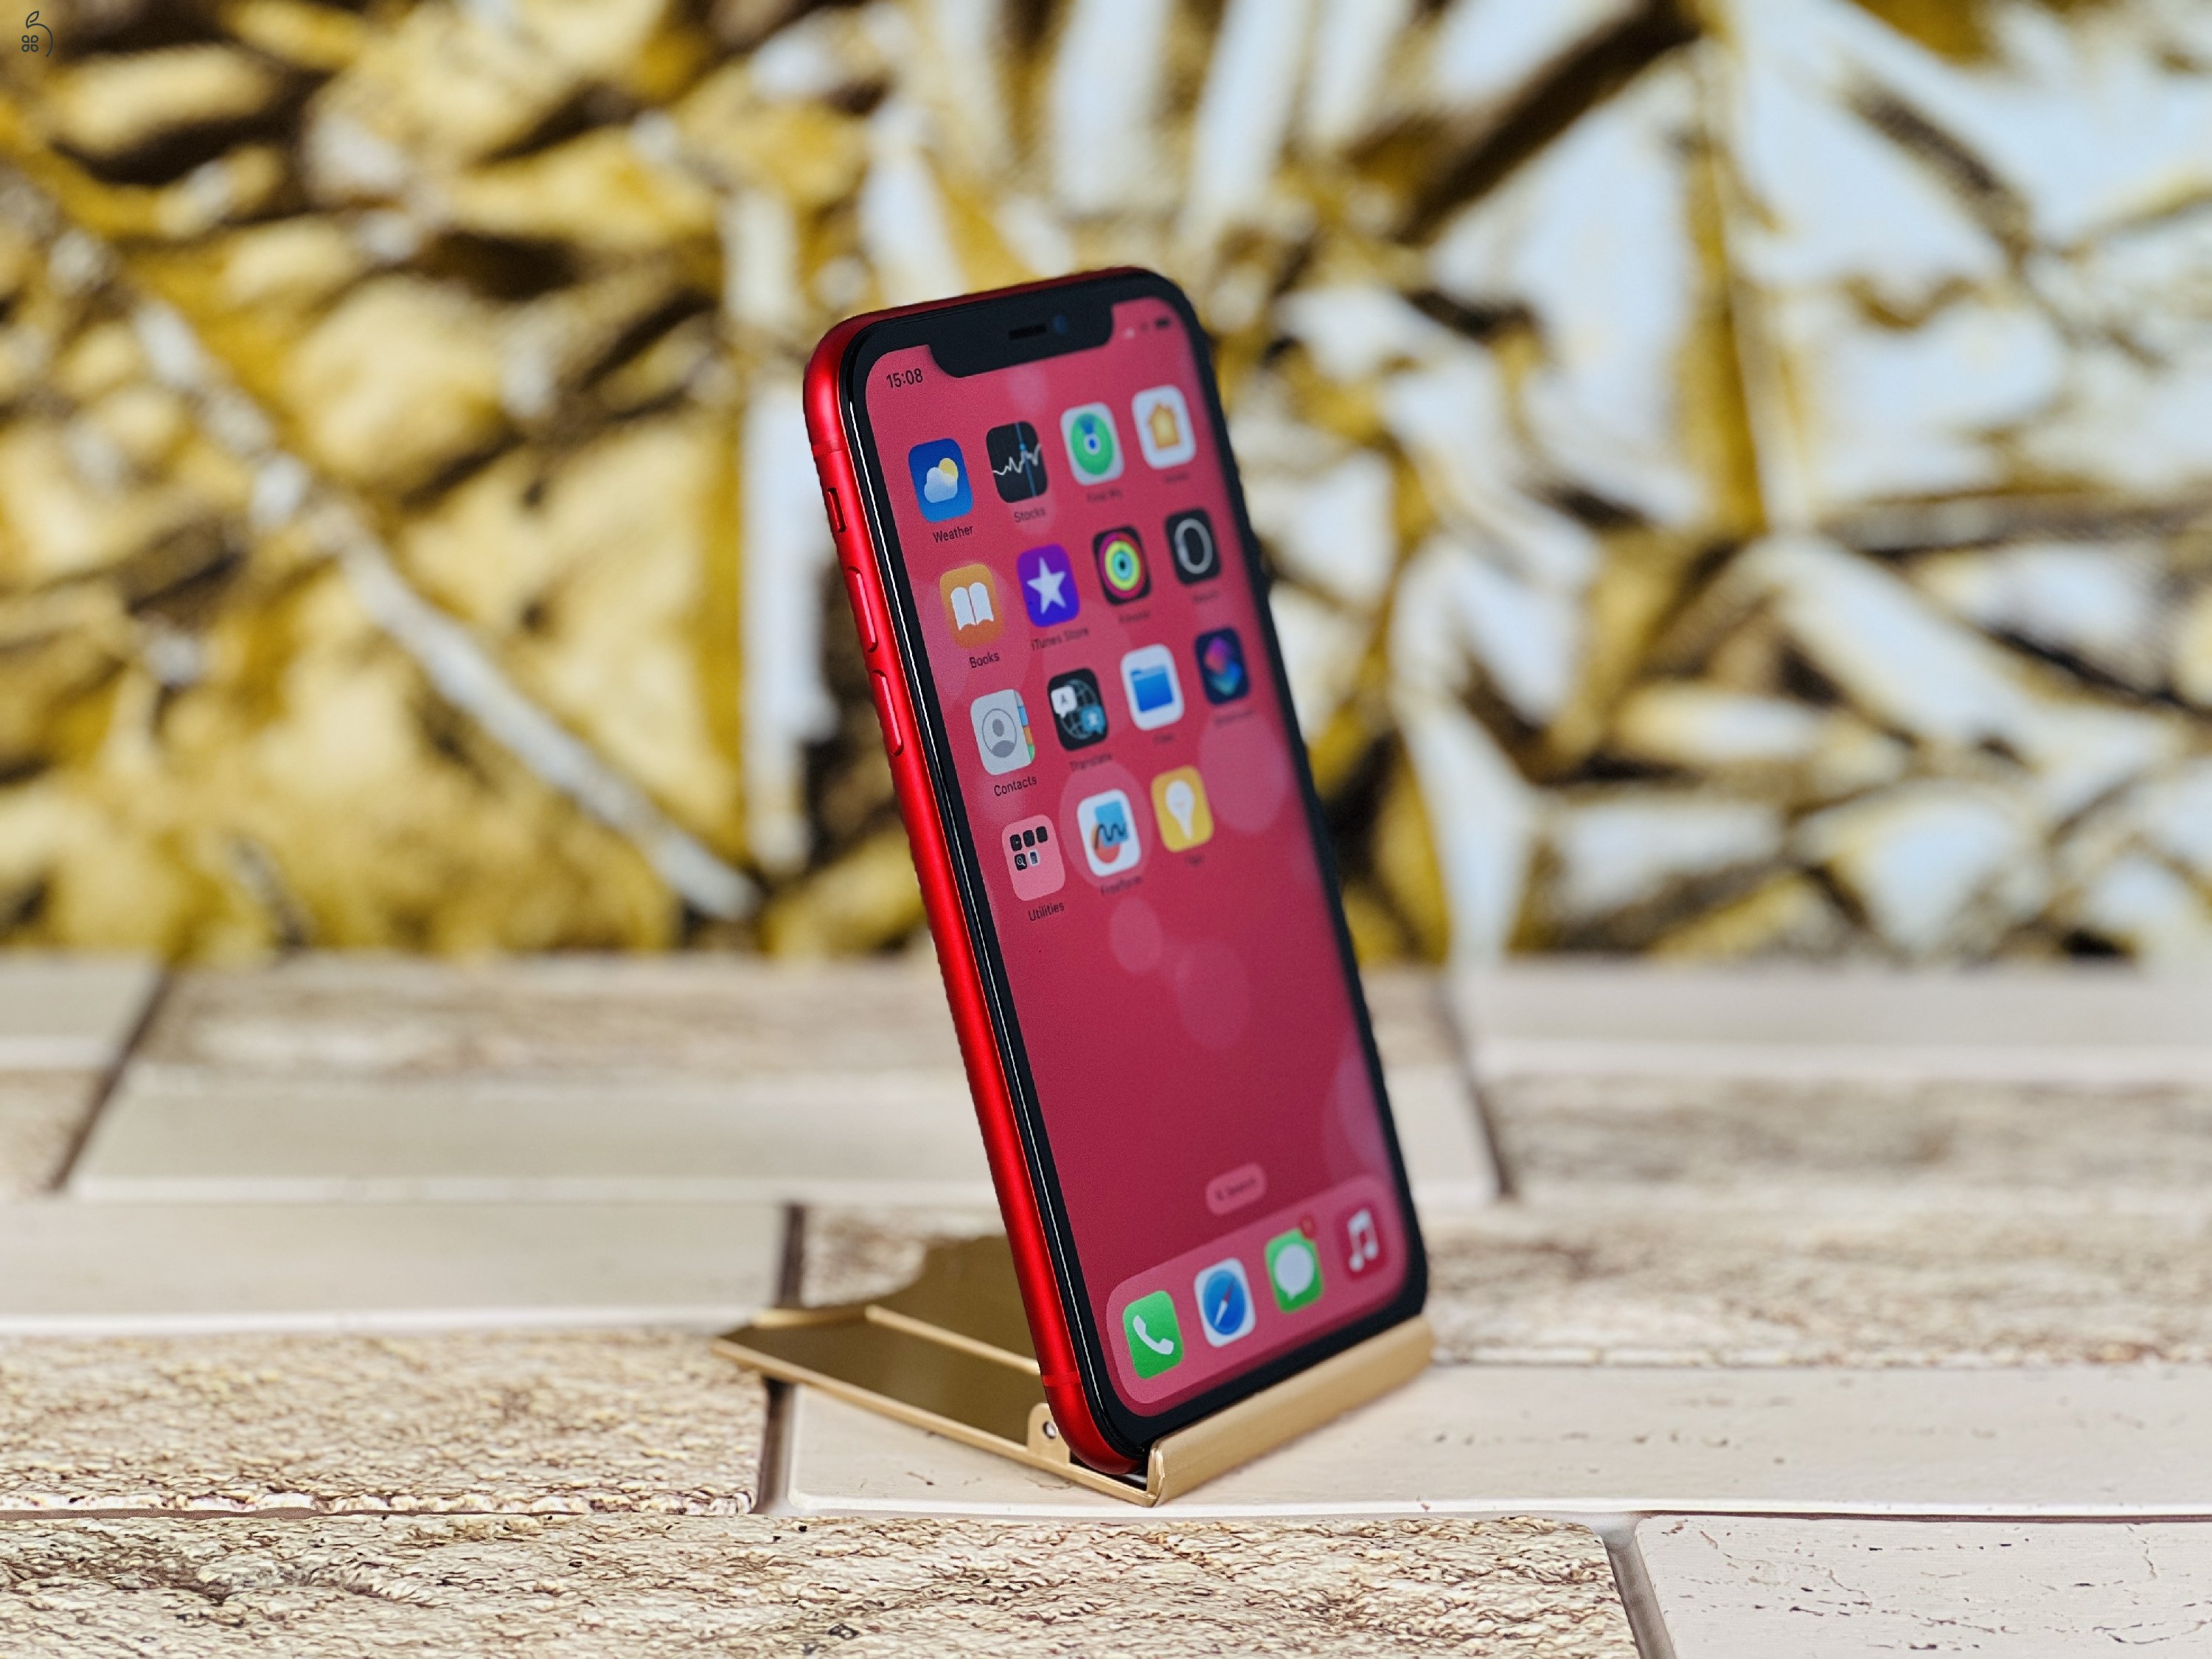 Eladó iPhone 11 64 GB PRODUCT RED szép állapotú - 12 HÓ GARANCIA - R7410